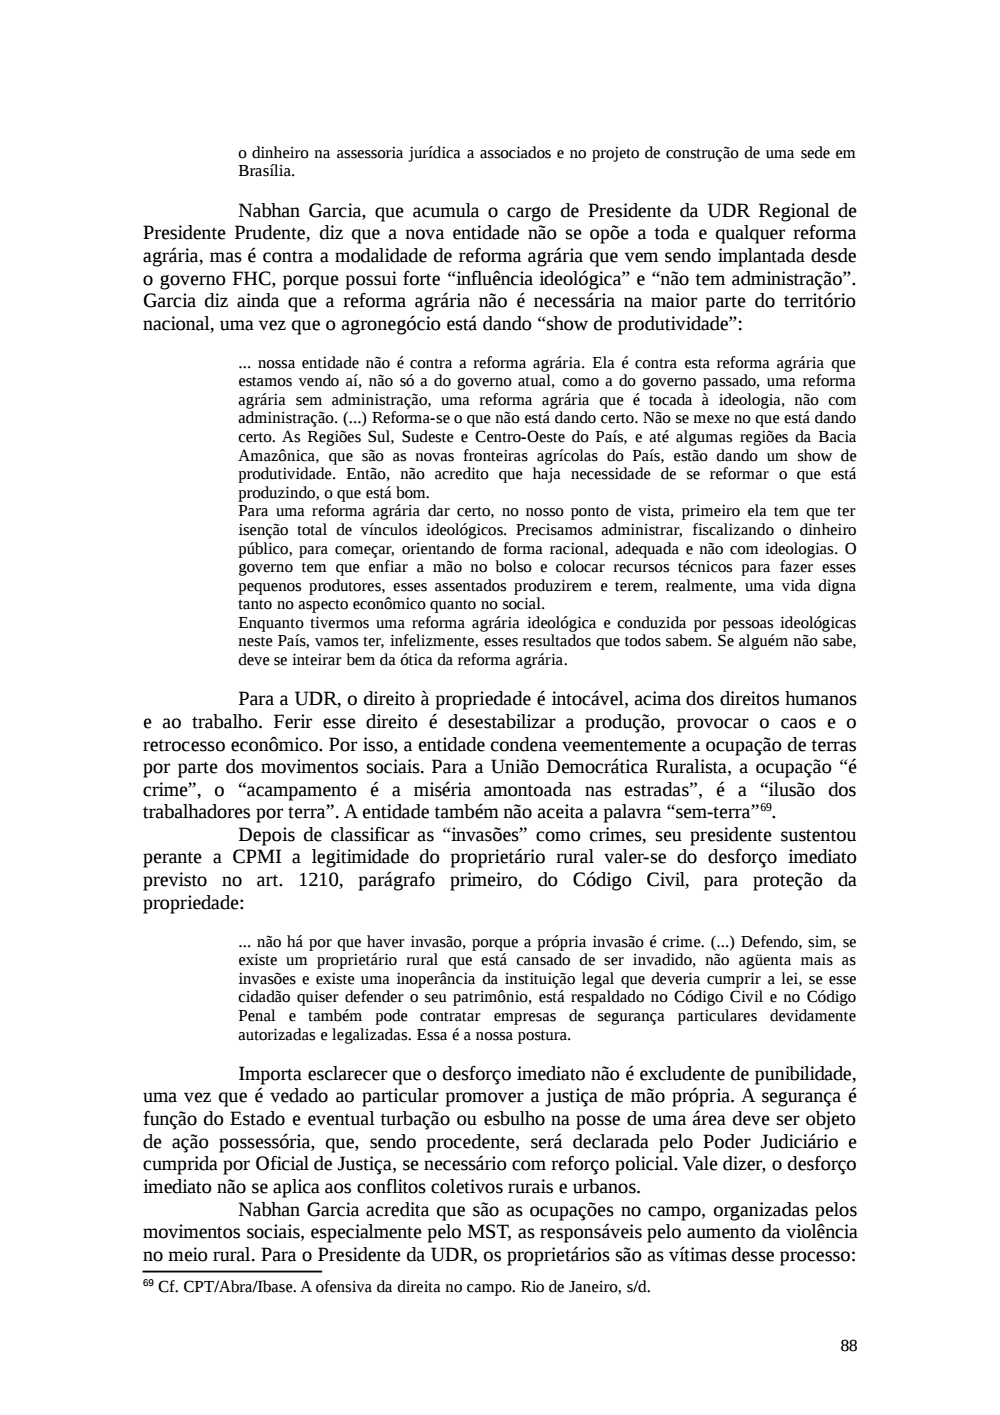 Page 88 from Relatório final da comissão